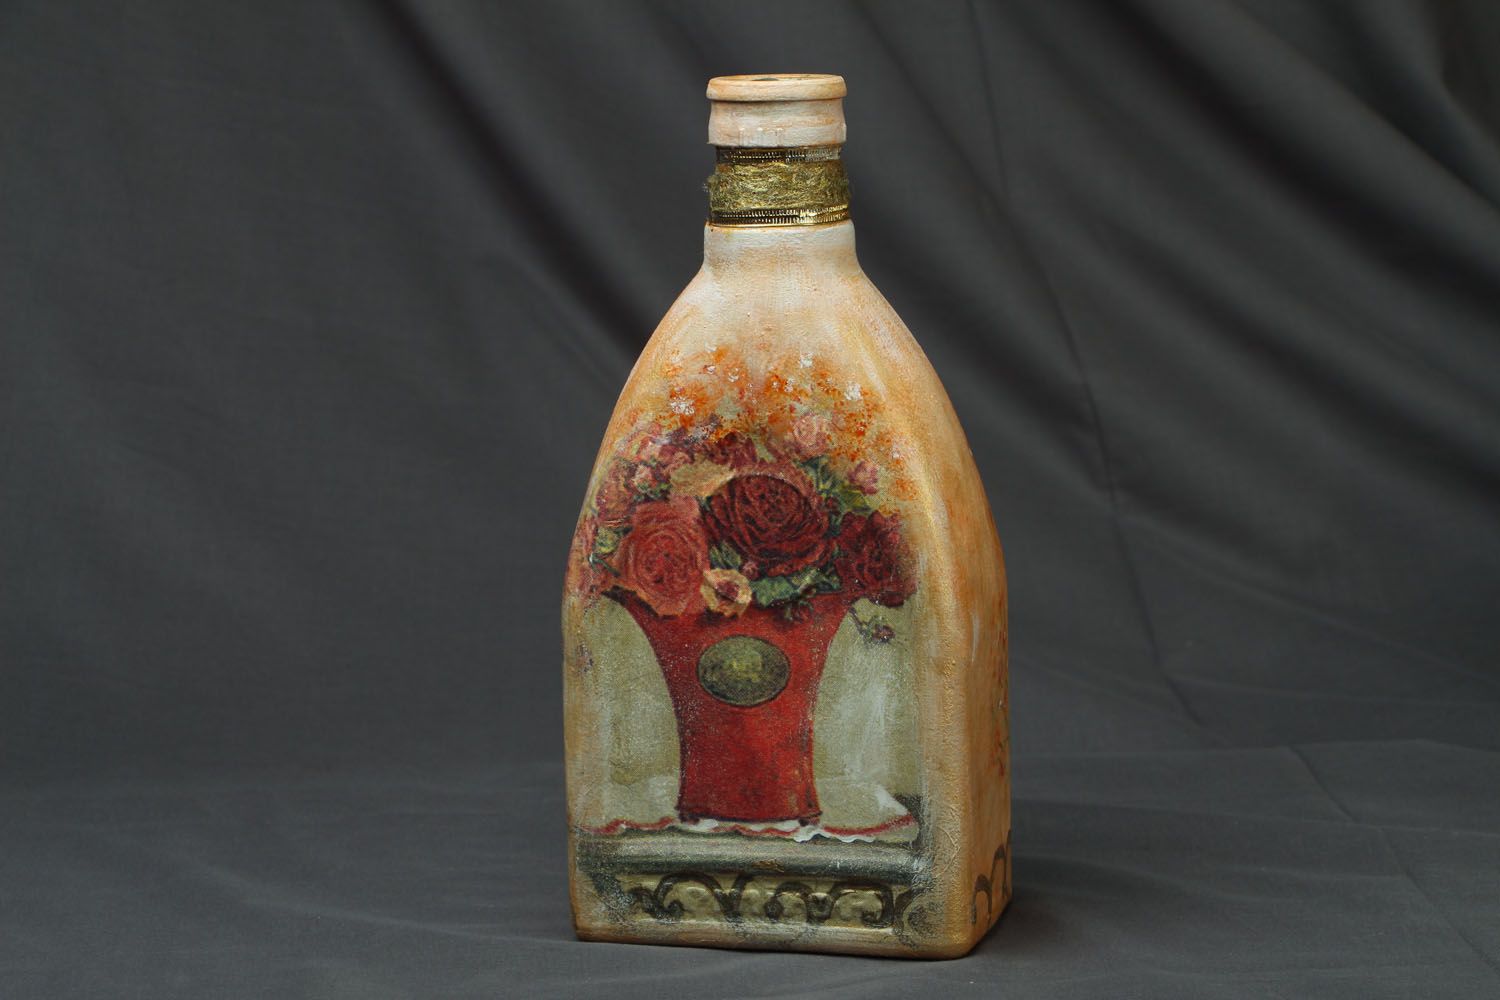 Homemade decorative bottle photo 1